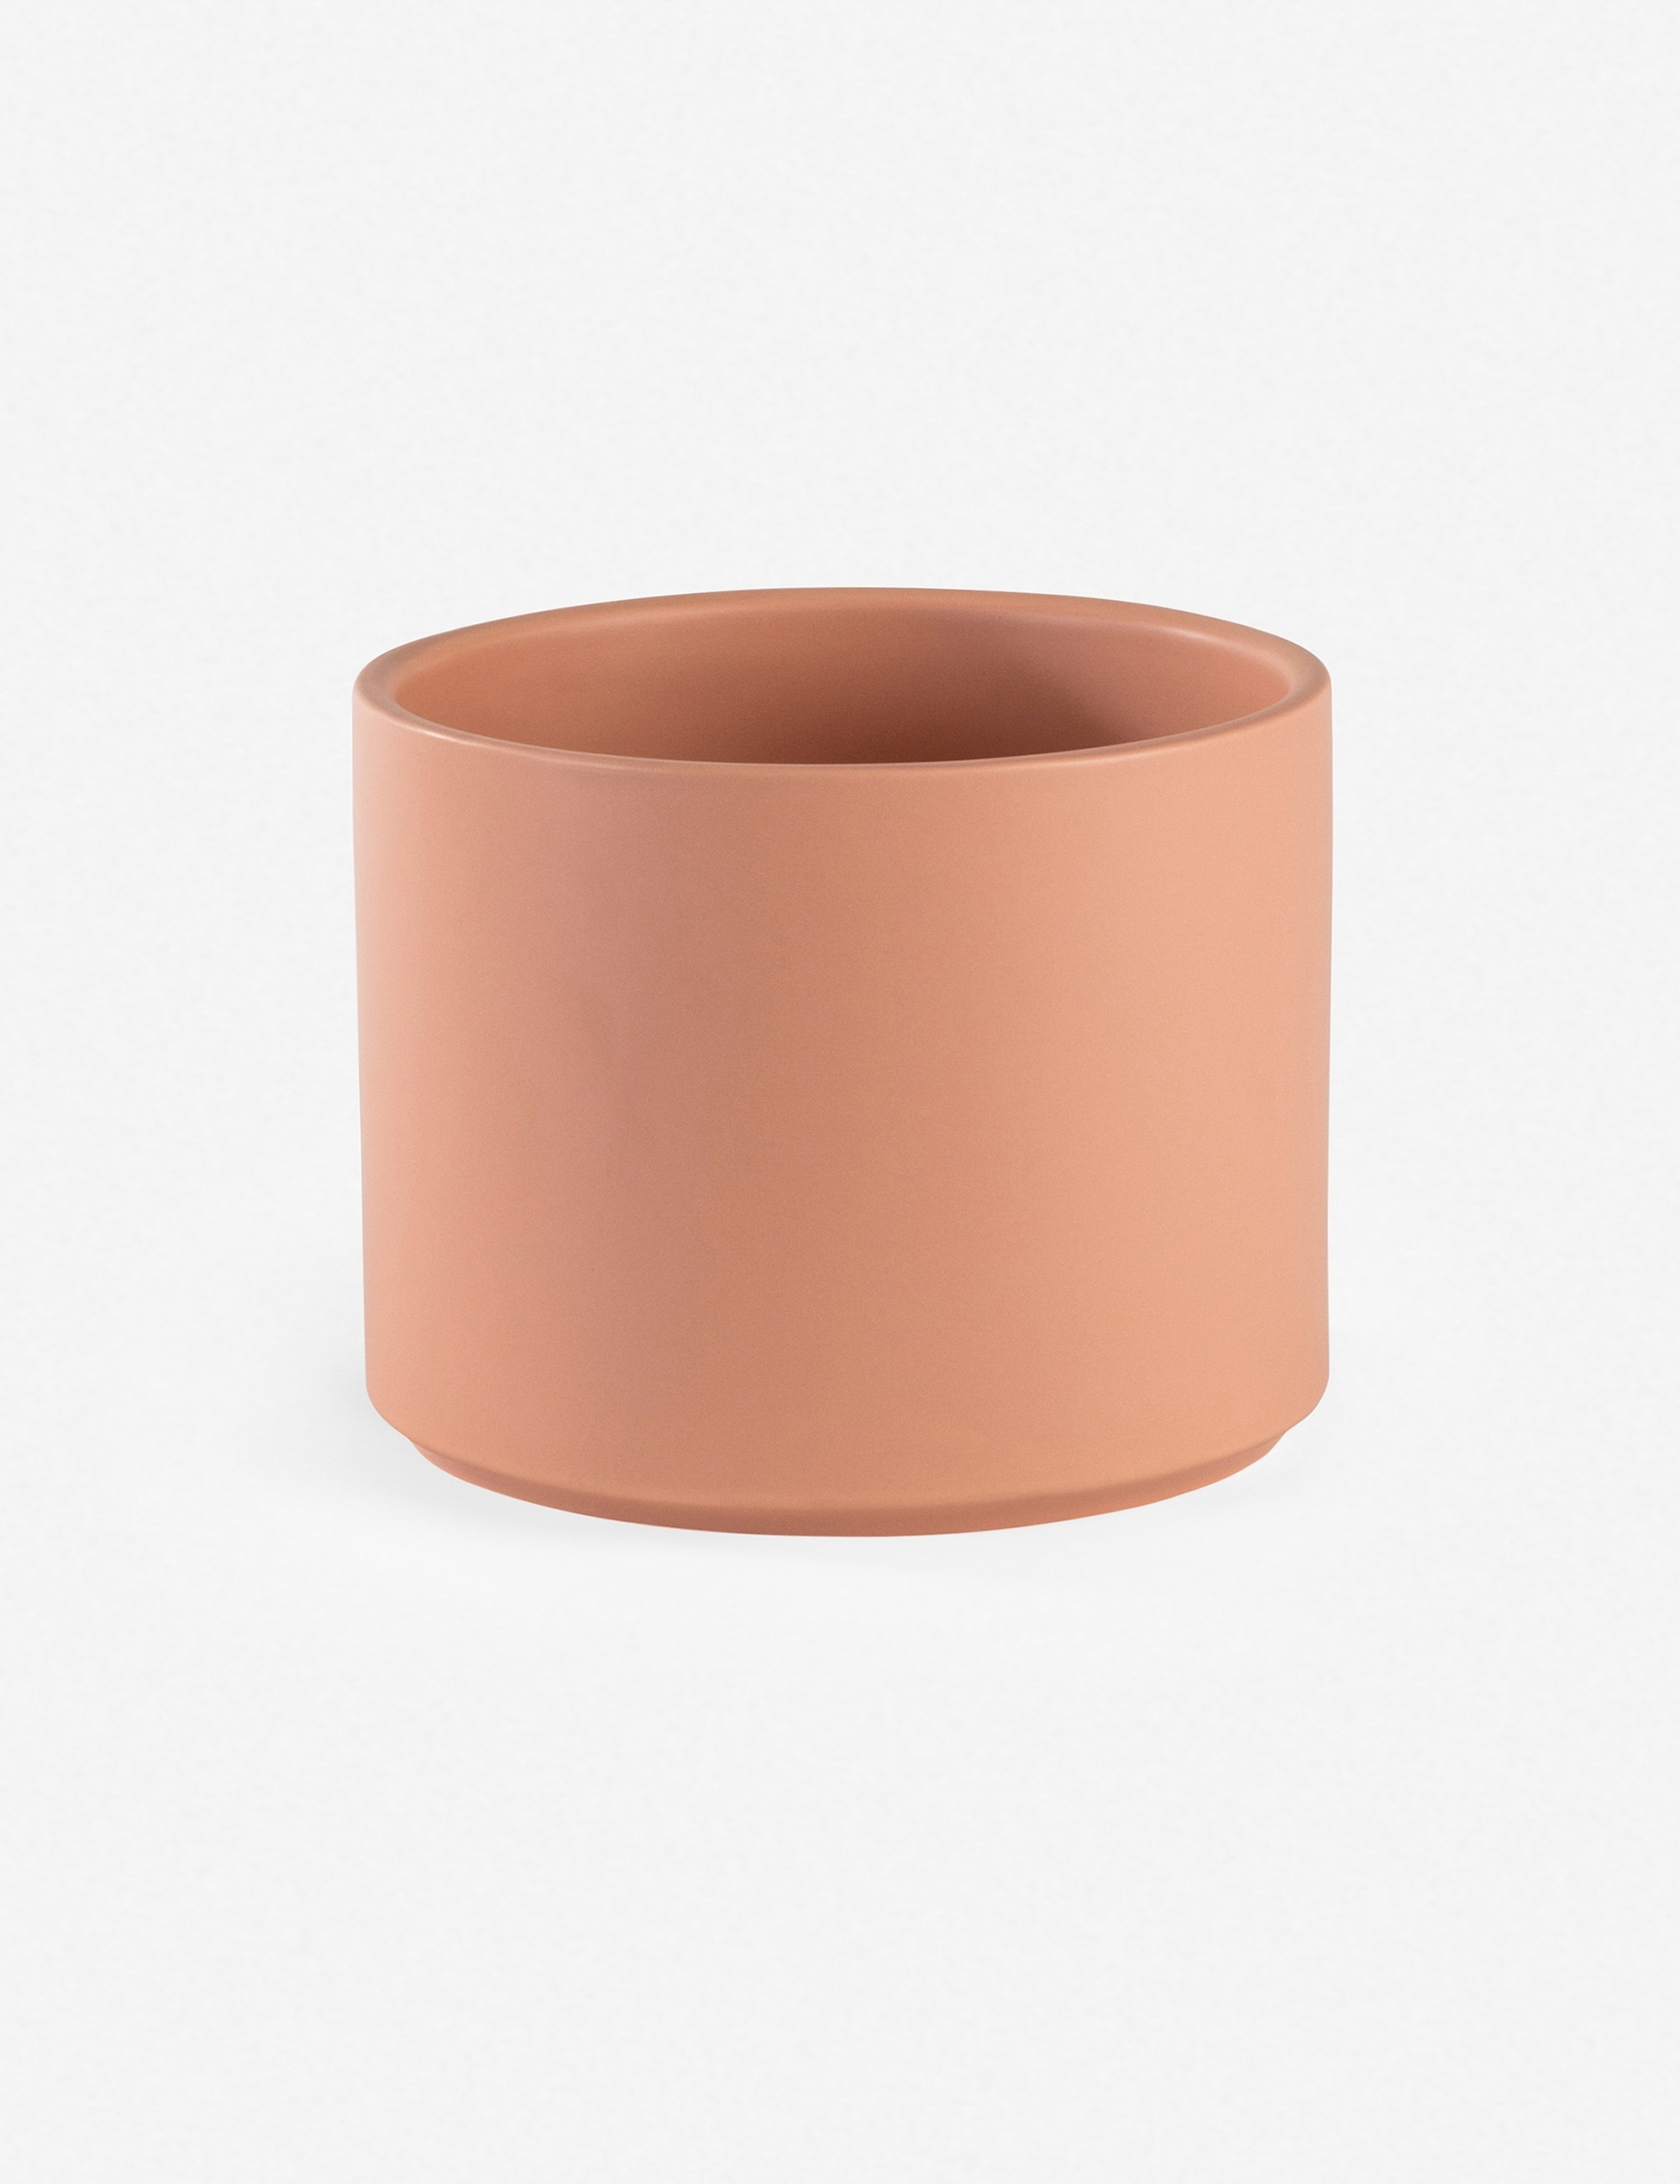 LBE Design Ceramic Planter, Peach 10"Dia x 9"H - with stand - Image 1